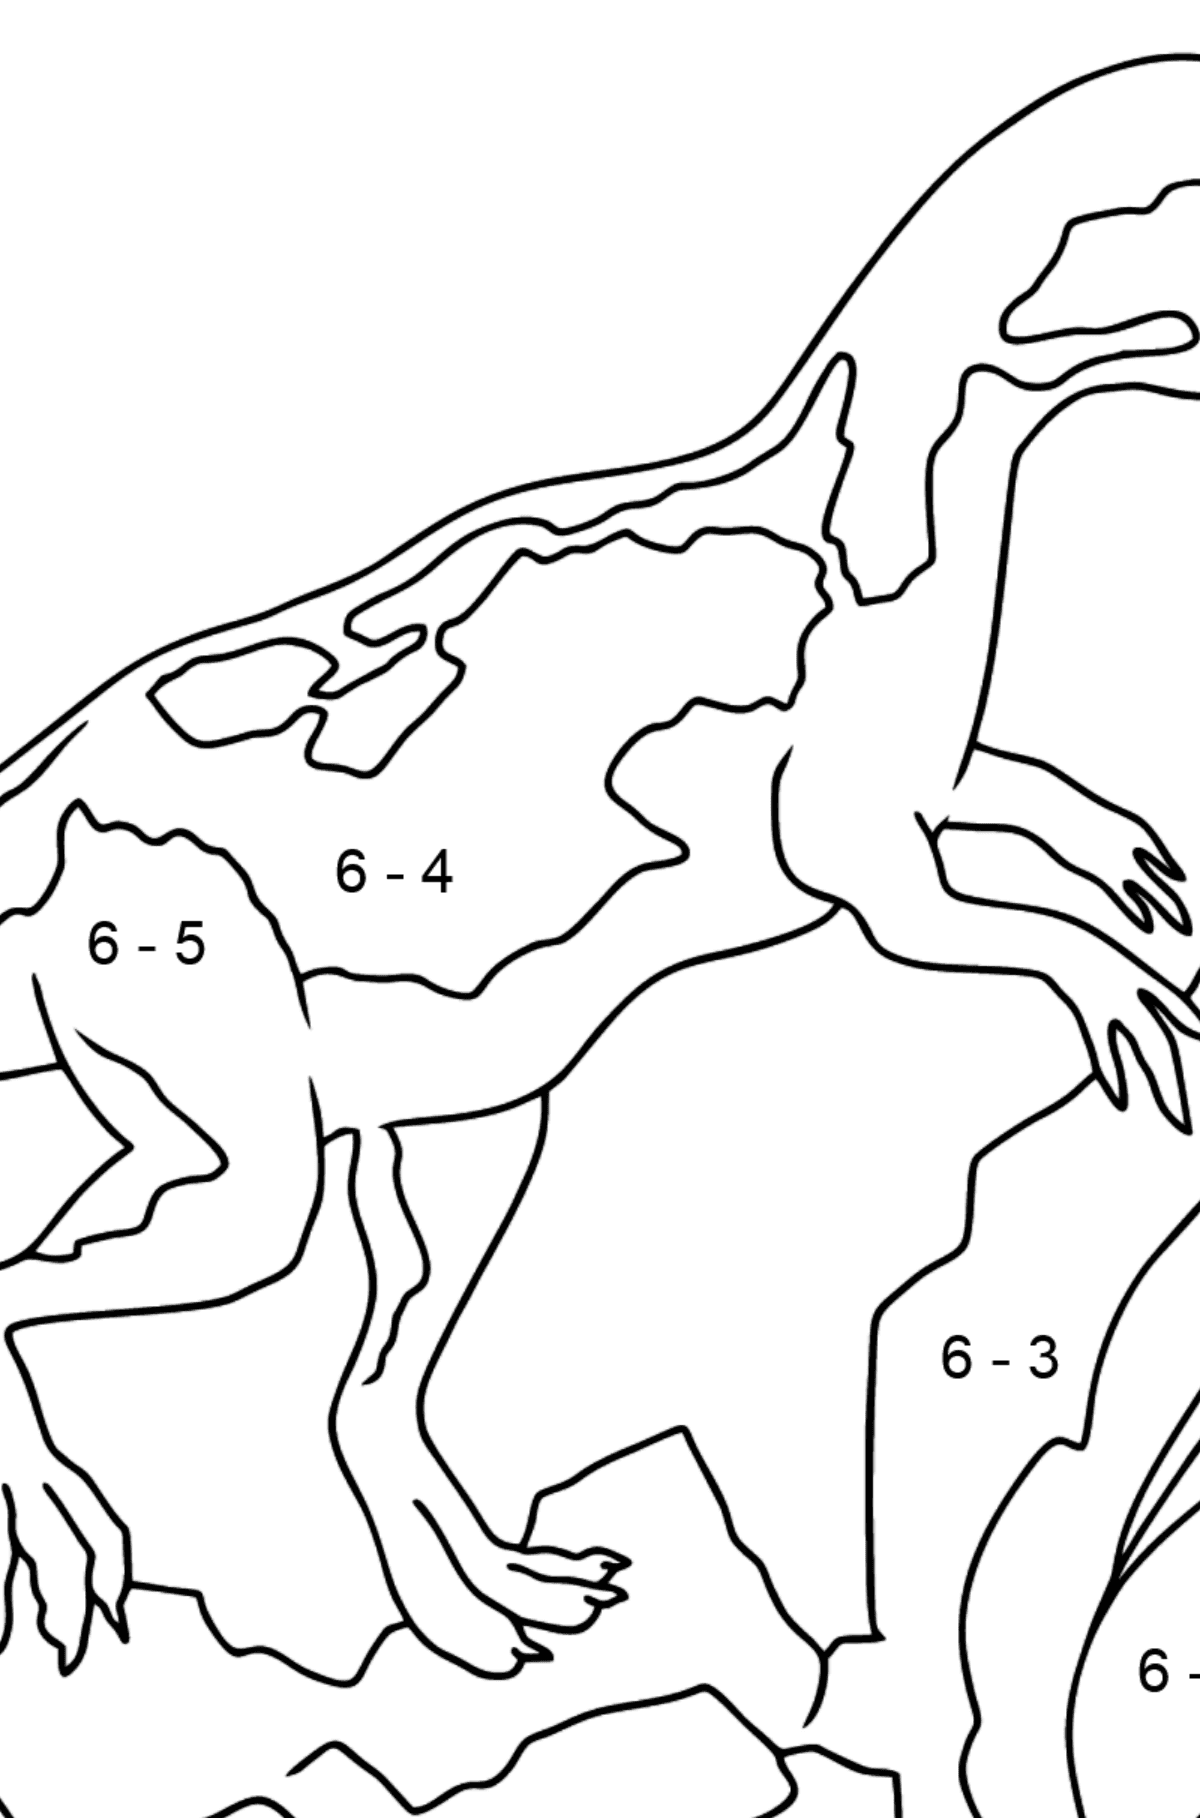 Dibujo para colorear de dinosaurio jurásico (fácil) - Colorear con Matemáticas - Restas para Niños